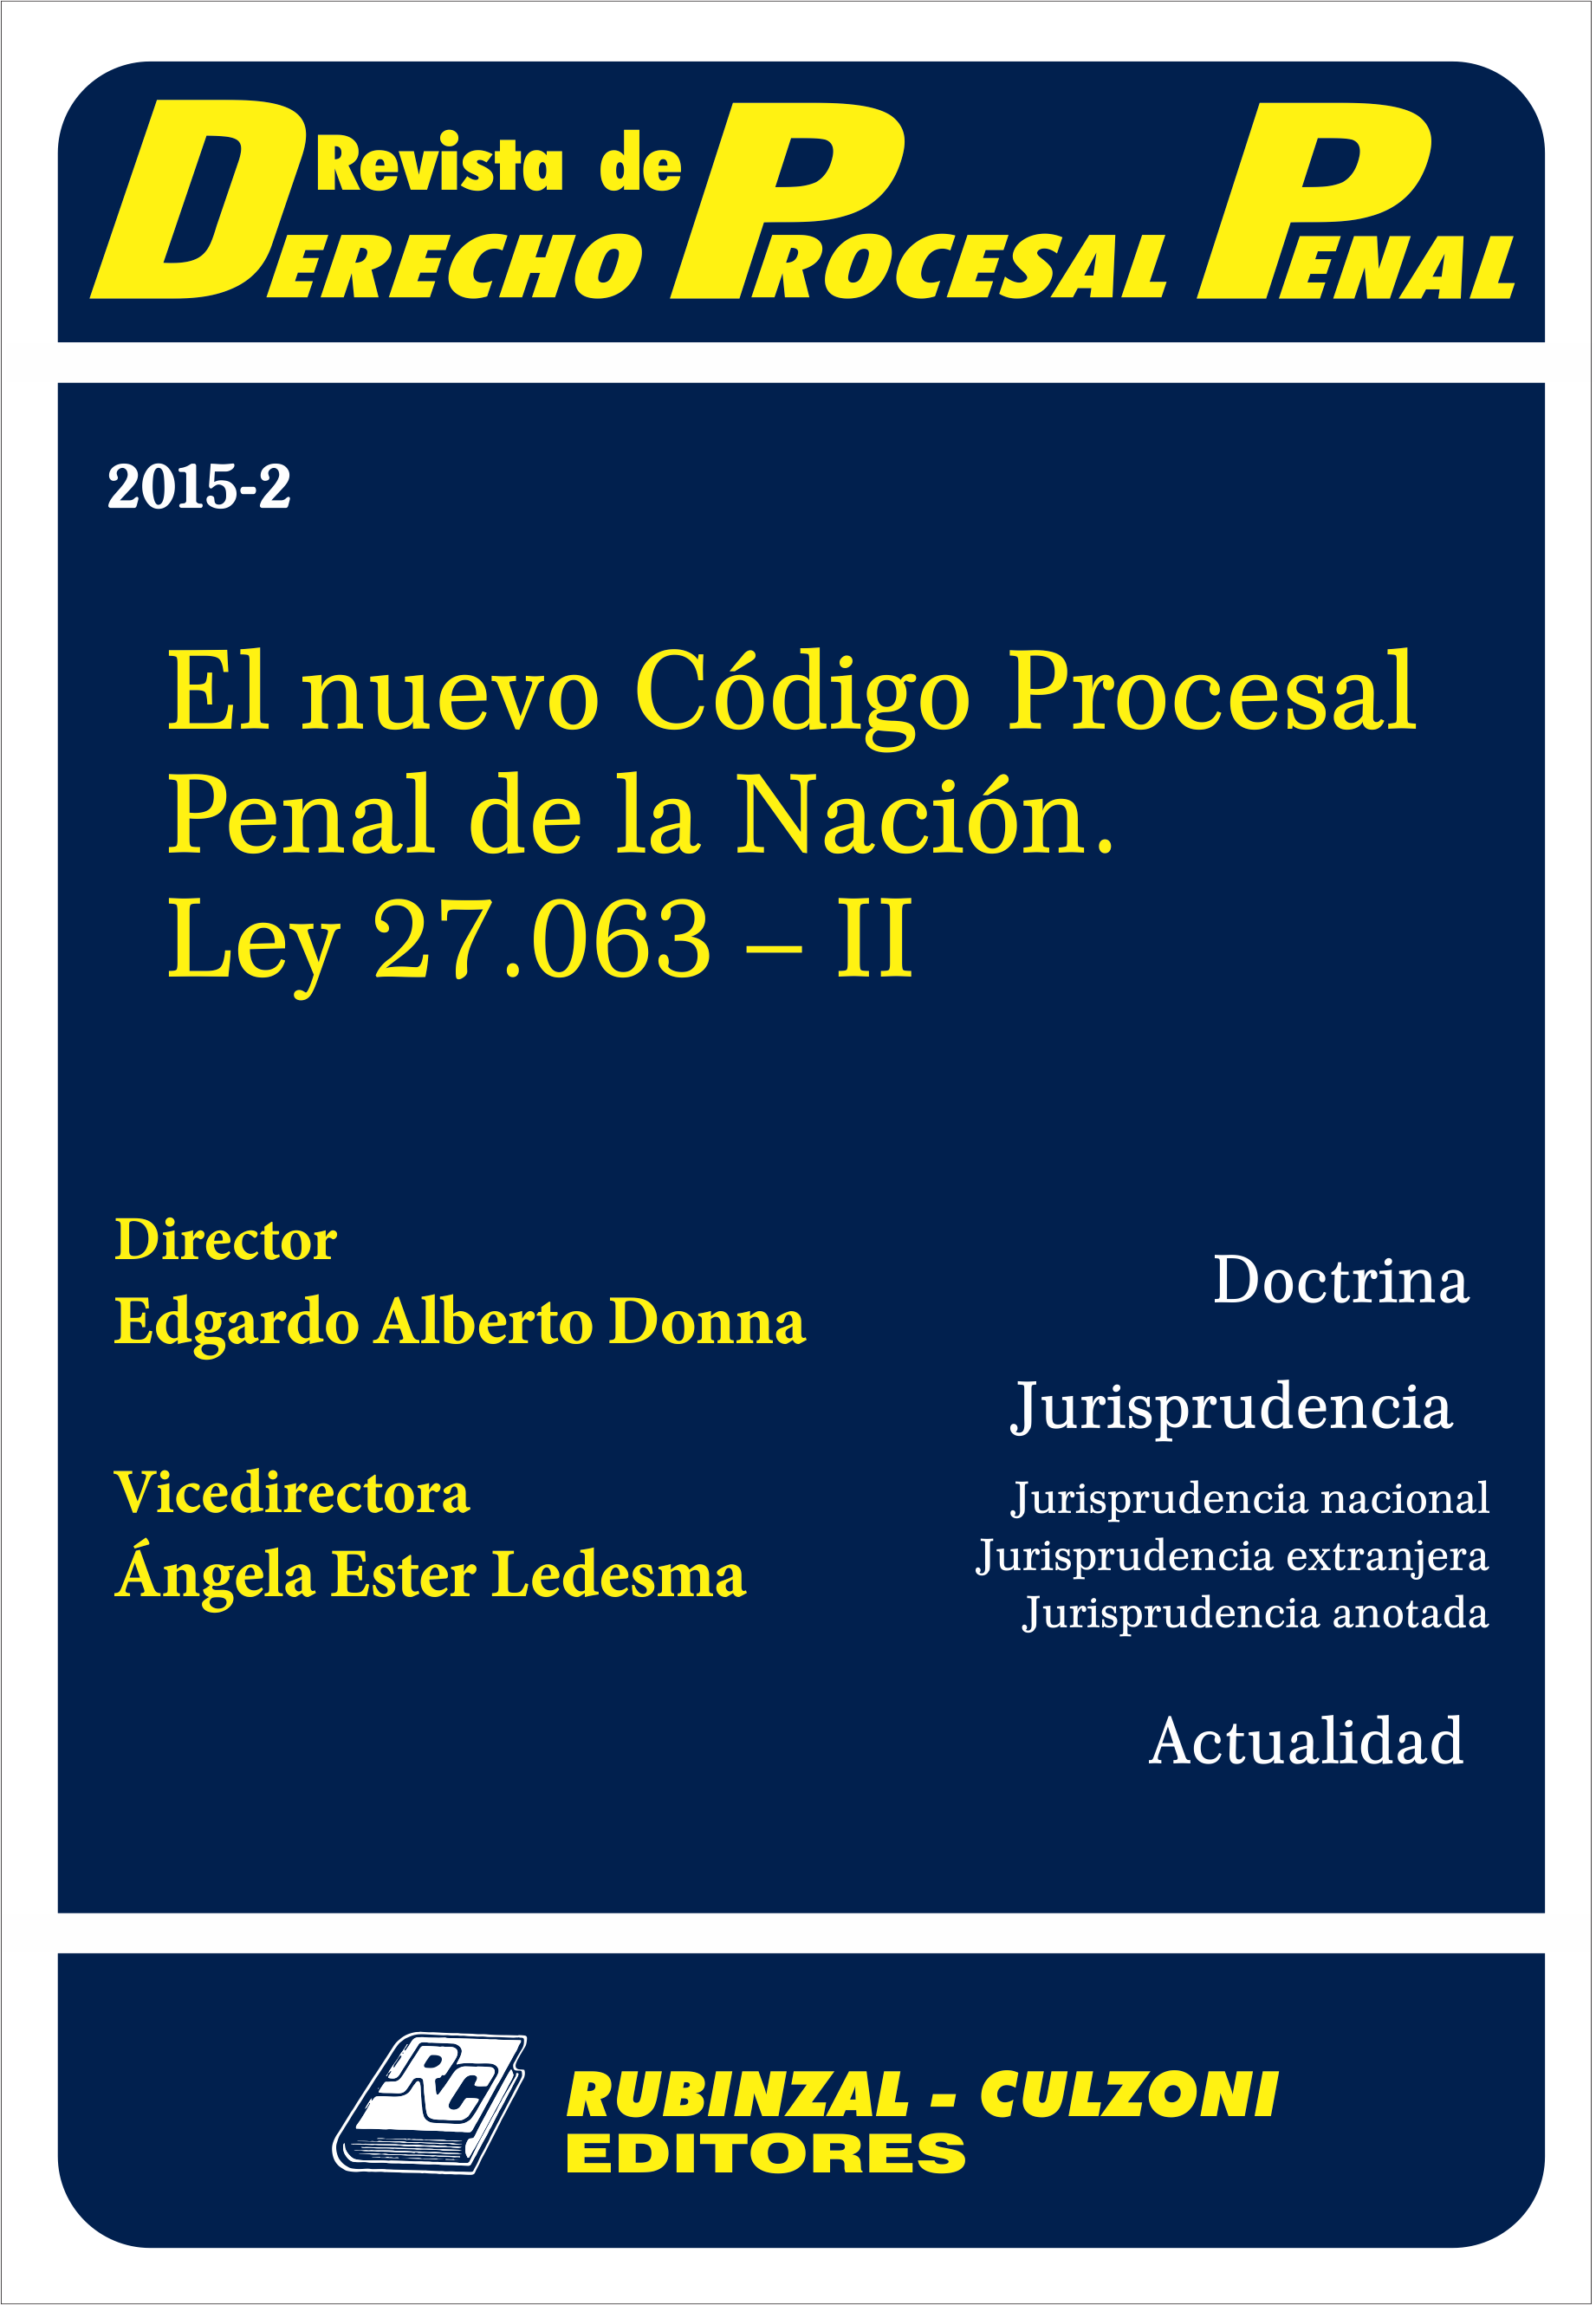 Revista de Derecho Procesal Penal - El nuevo Código Procesal Penal de la Nación. Ley 27.063 - II